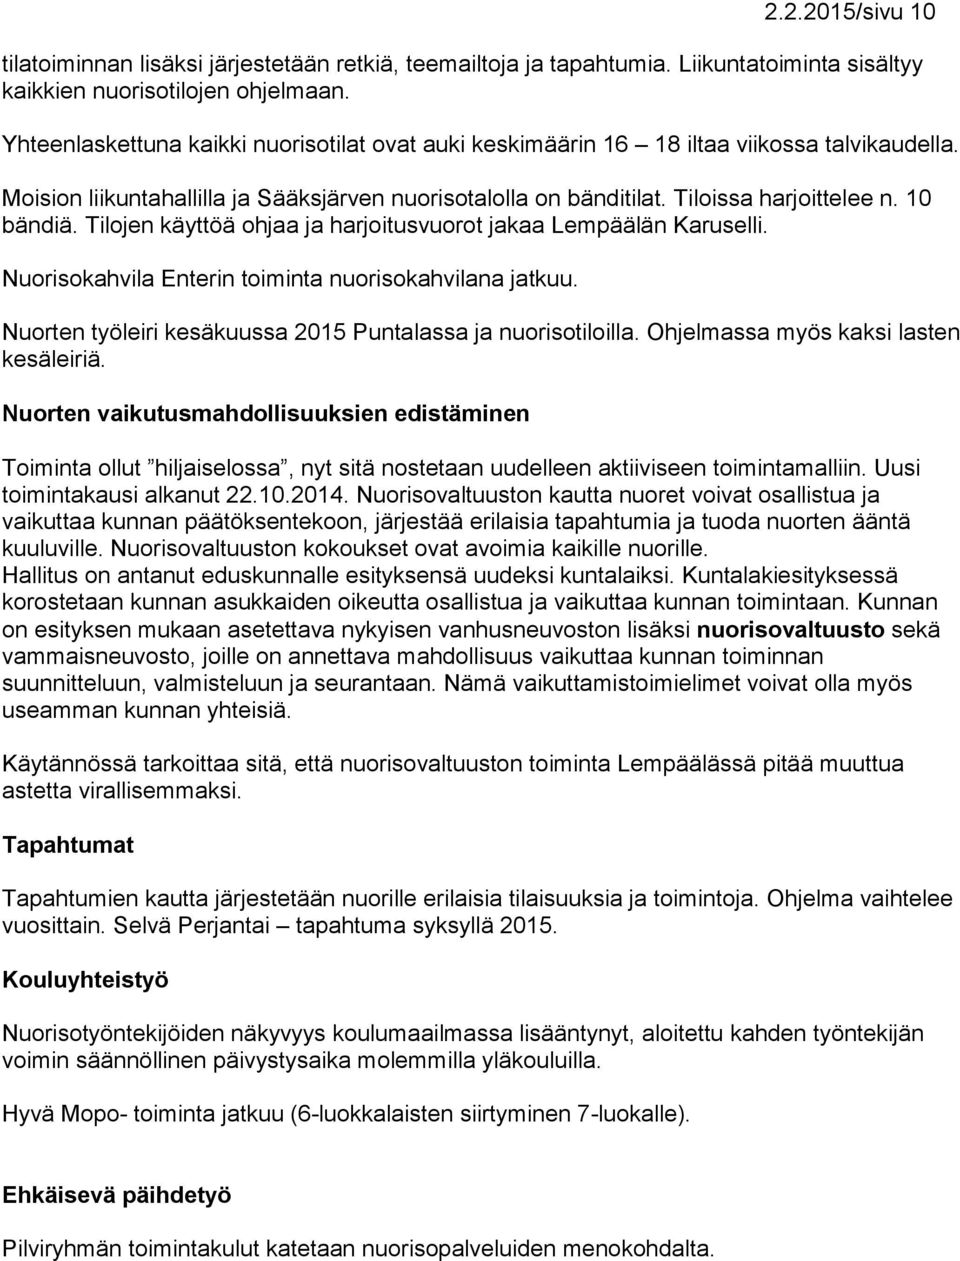 Tilojen käyttöä ohjaa ja harjoitusvuorot jakaa Lempäälän aruselli. Nuorisokahvila Enterin toiminta nuorisokahvilana jatkuu. Nuorten työleiri kesäkuussa 2015 Puntalassa ja nuorisotiloilla.